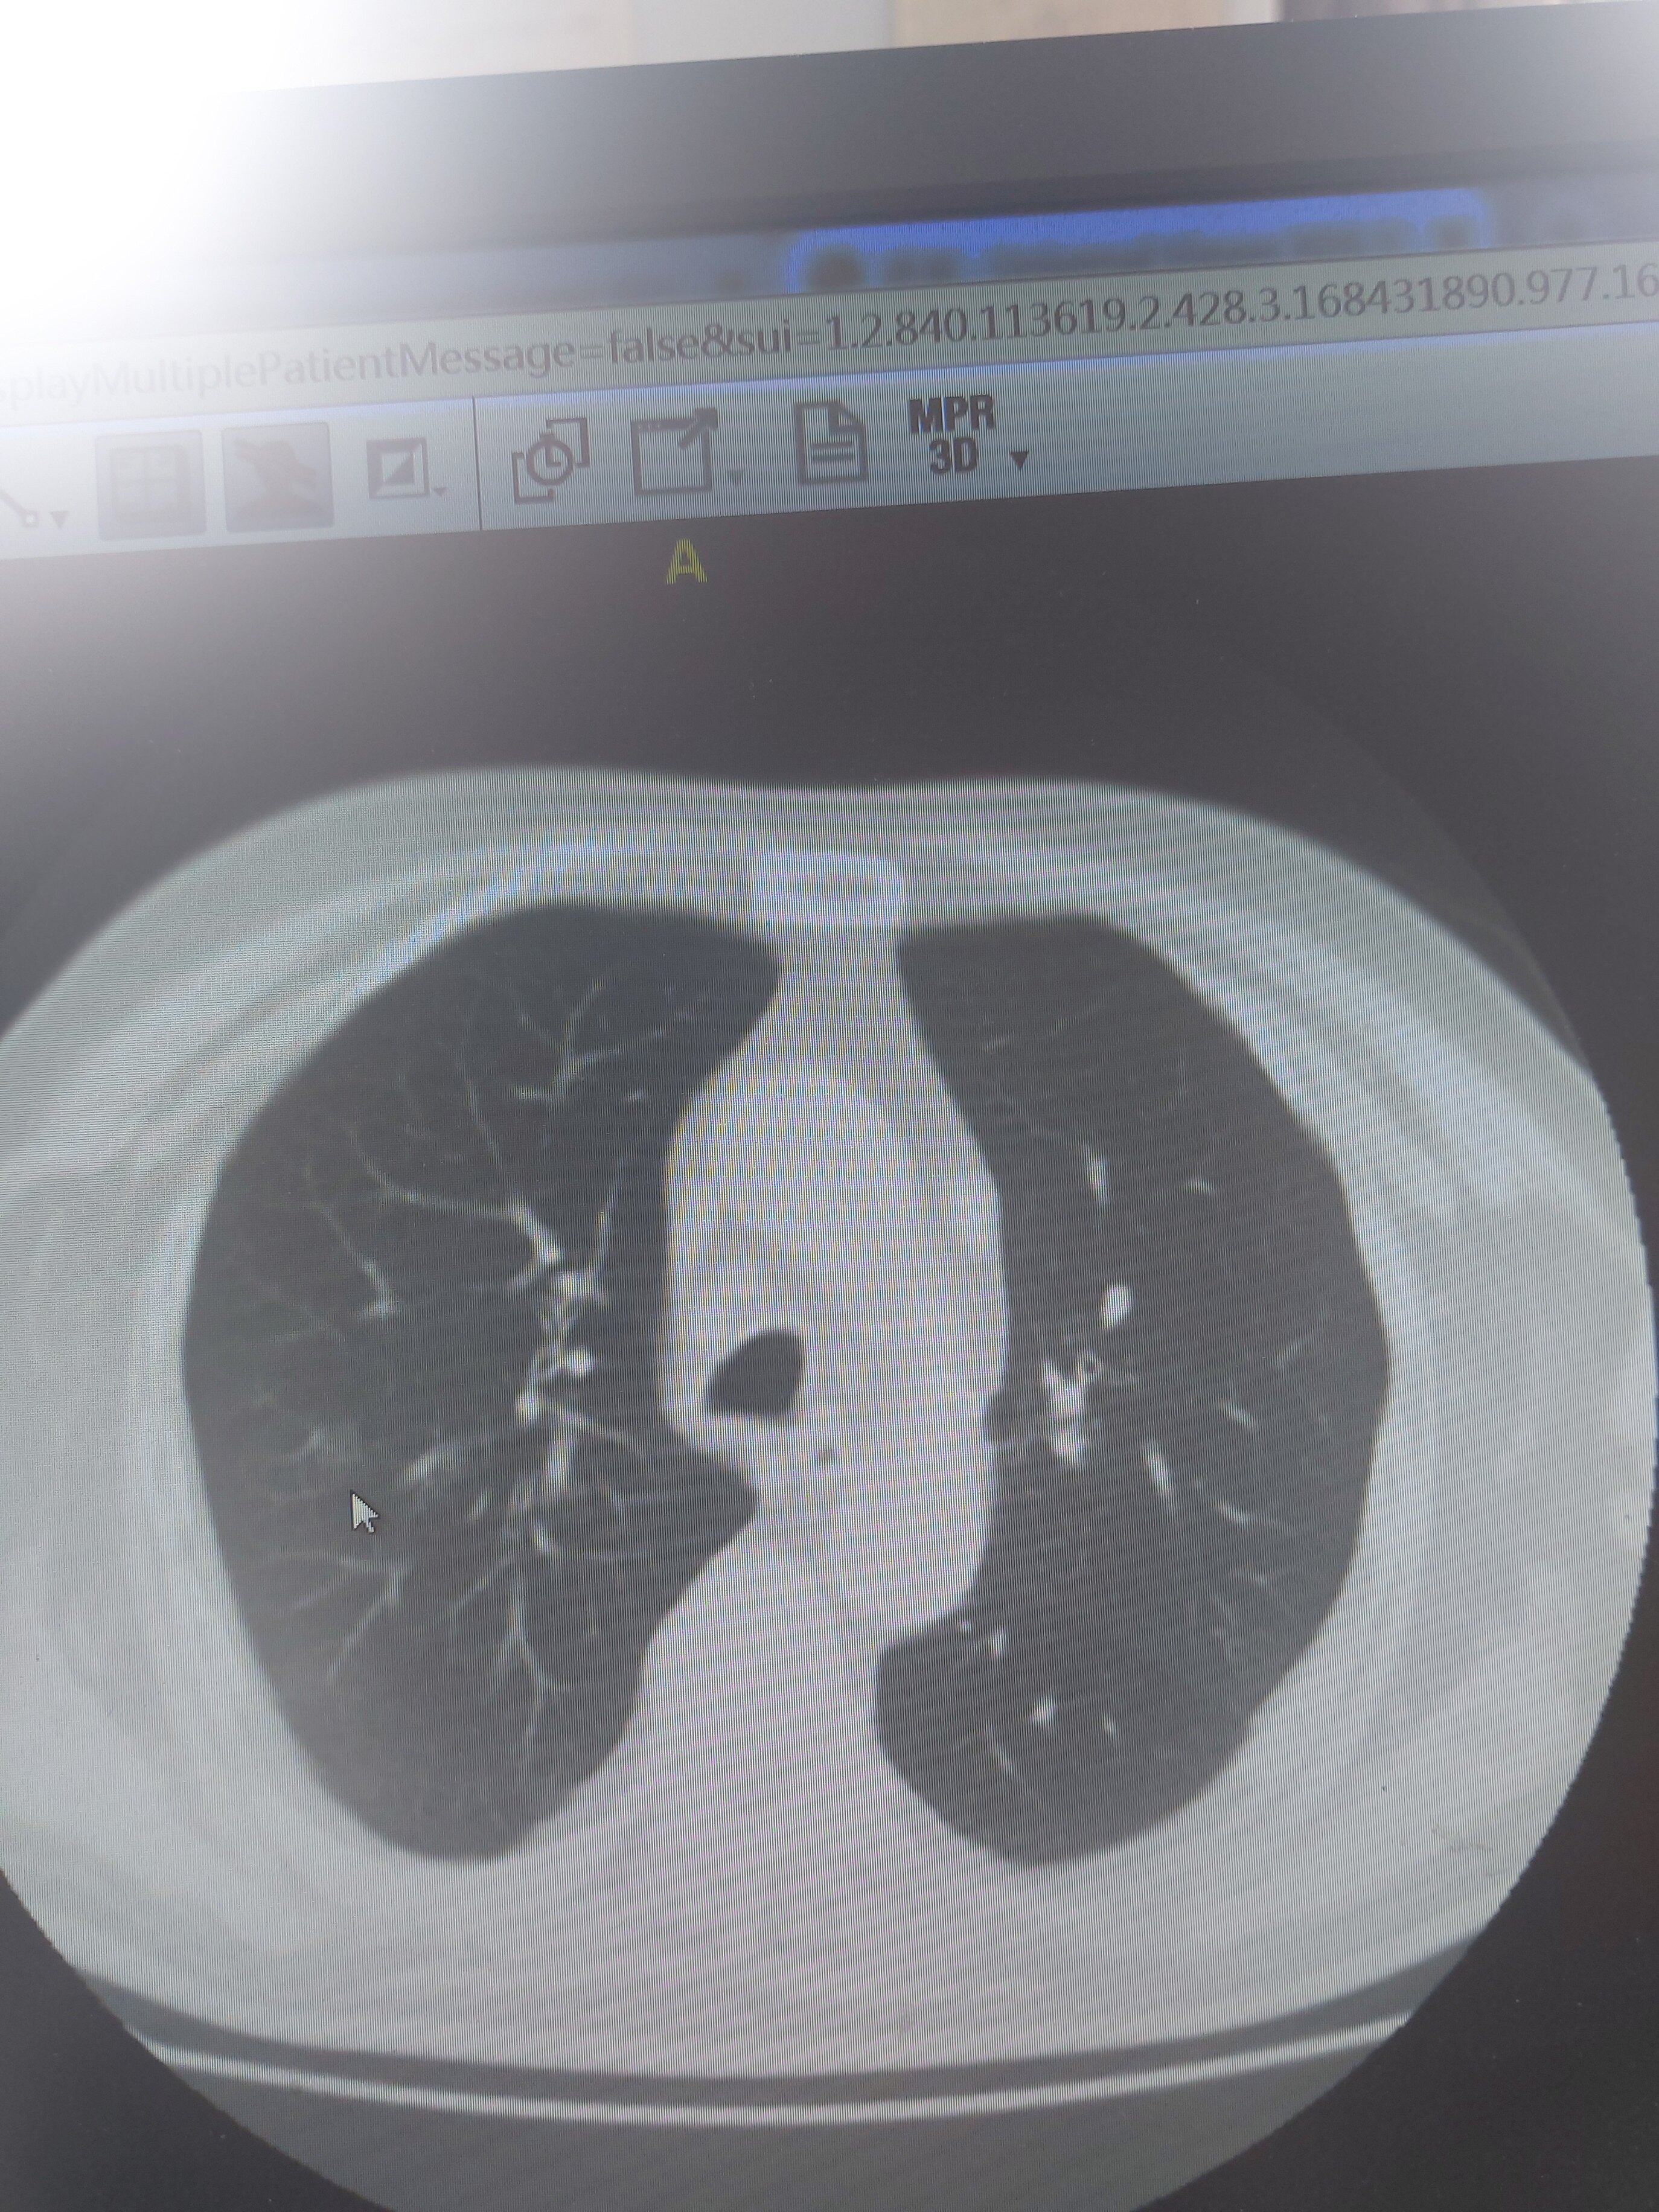 刘懿博士说肺癌 二一一一 做肠息肉,拍胸部ct发现了肺占位